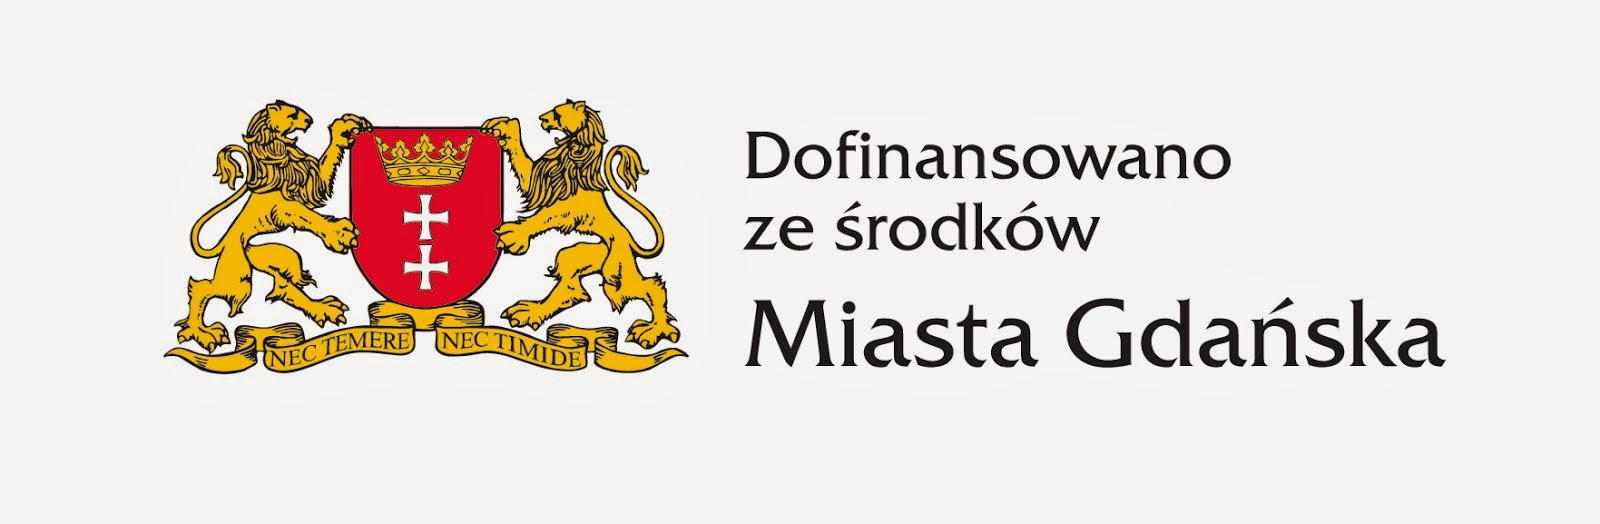 Urząd Miasta Gdańska